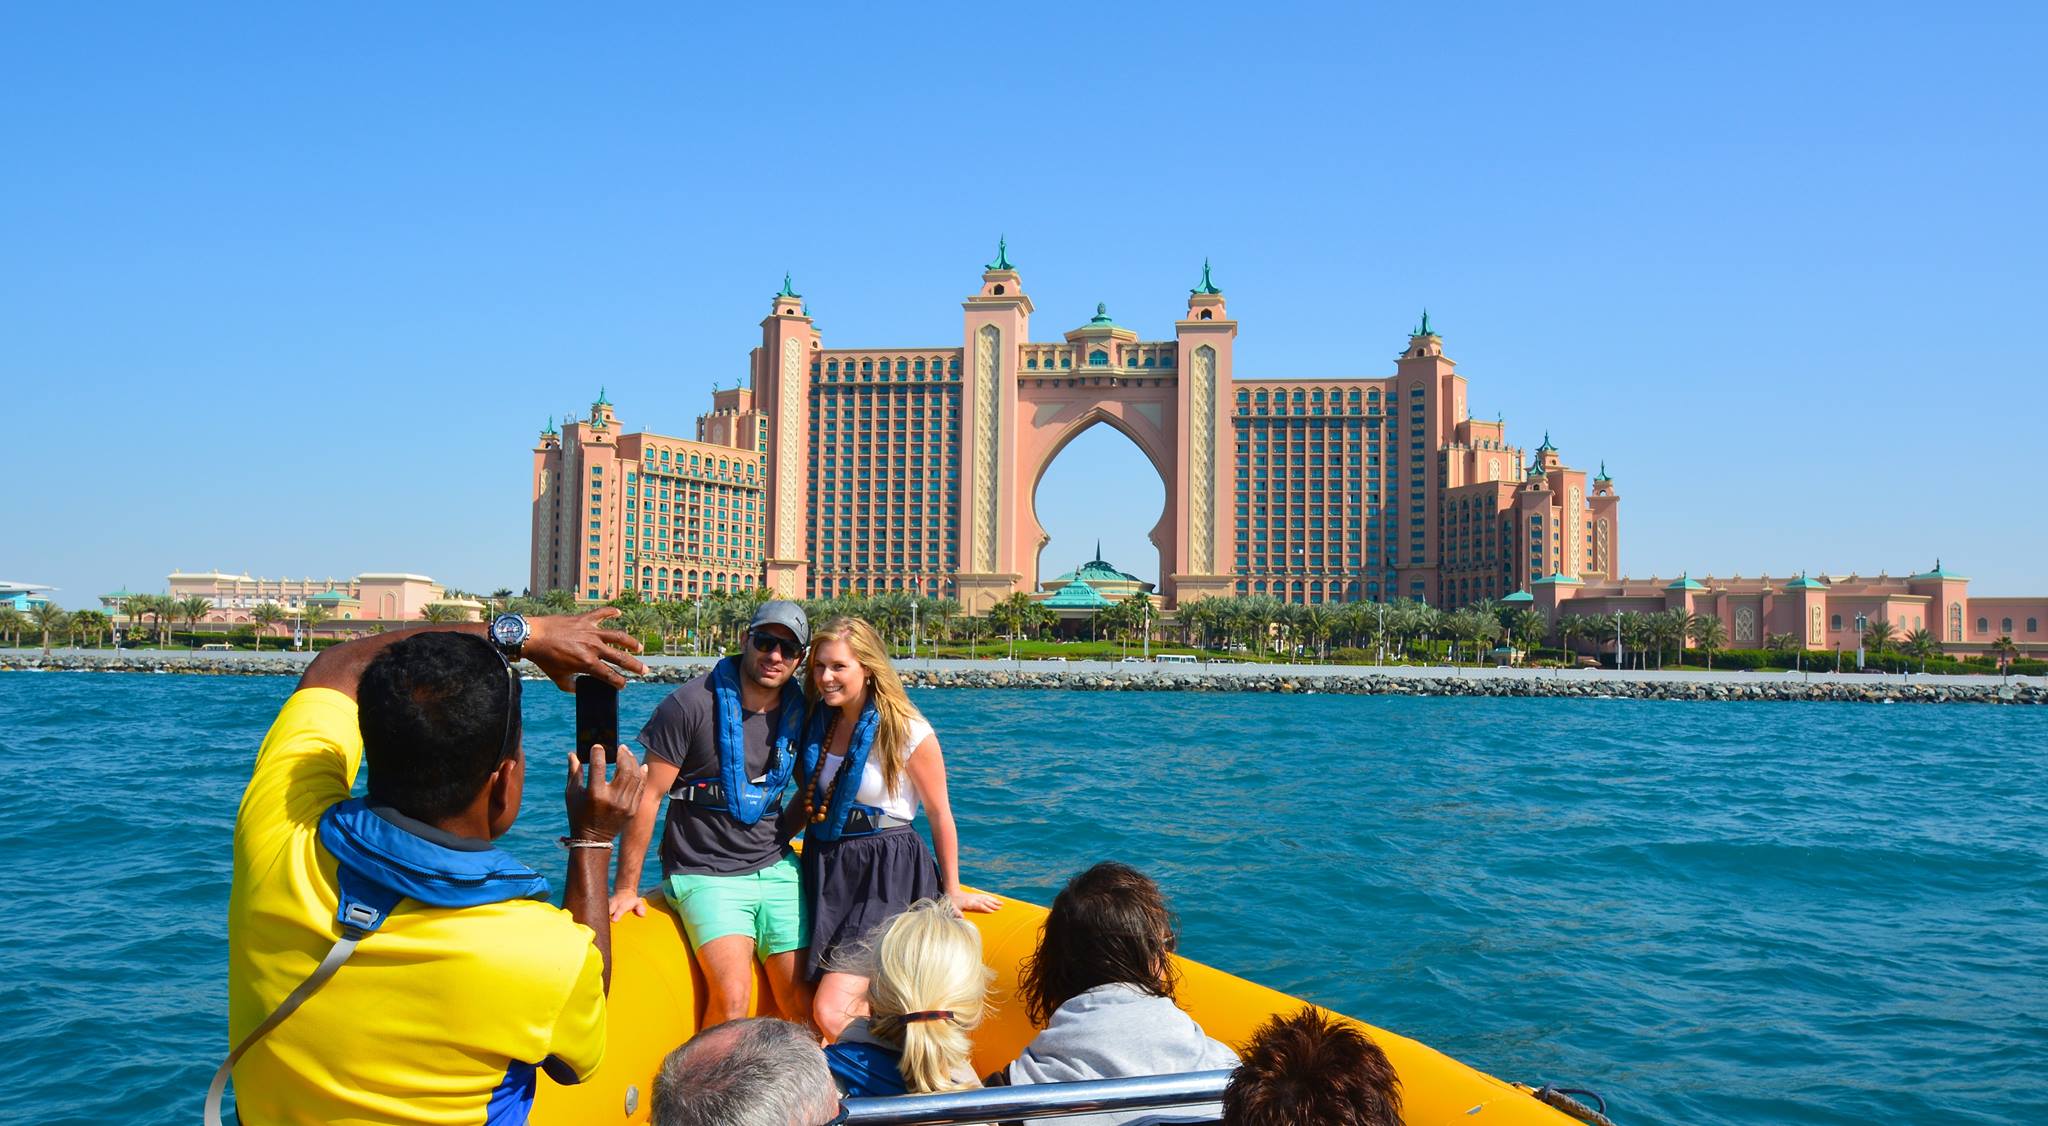 The Yellow Boats: 60 Minutes Marina Cruise